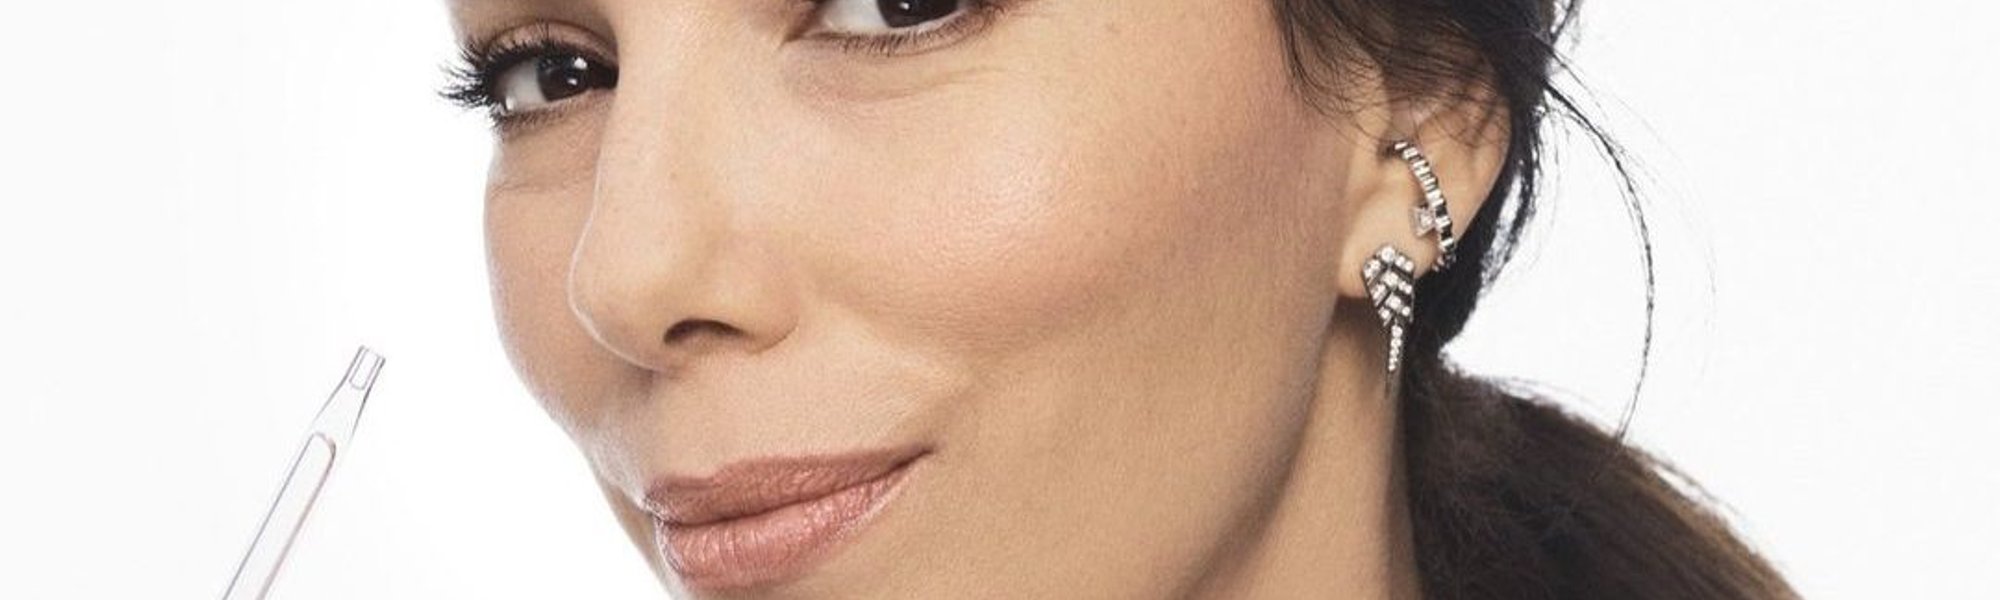 Para qué sirve la vitamina E en la cara y todos los beneficios de usarla| L'Oréal Paris